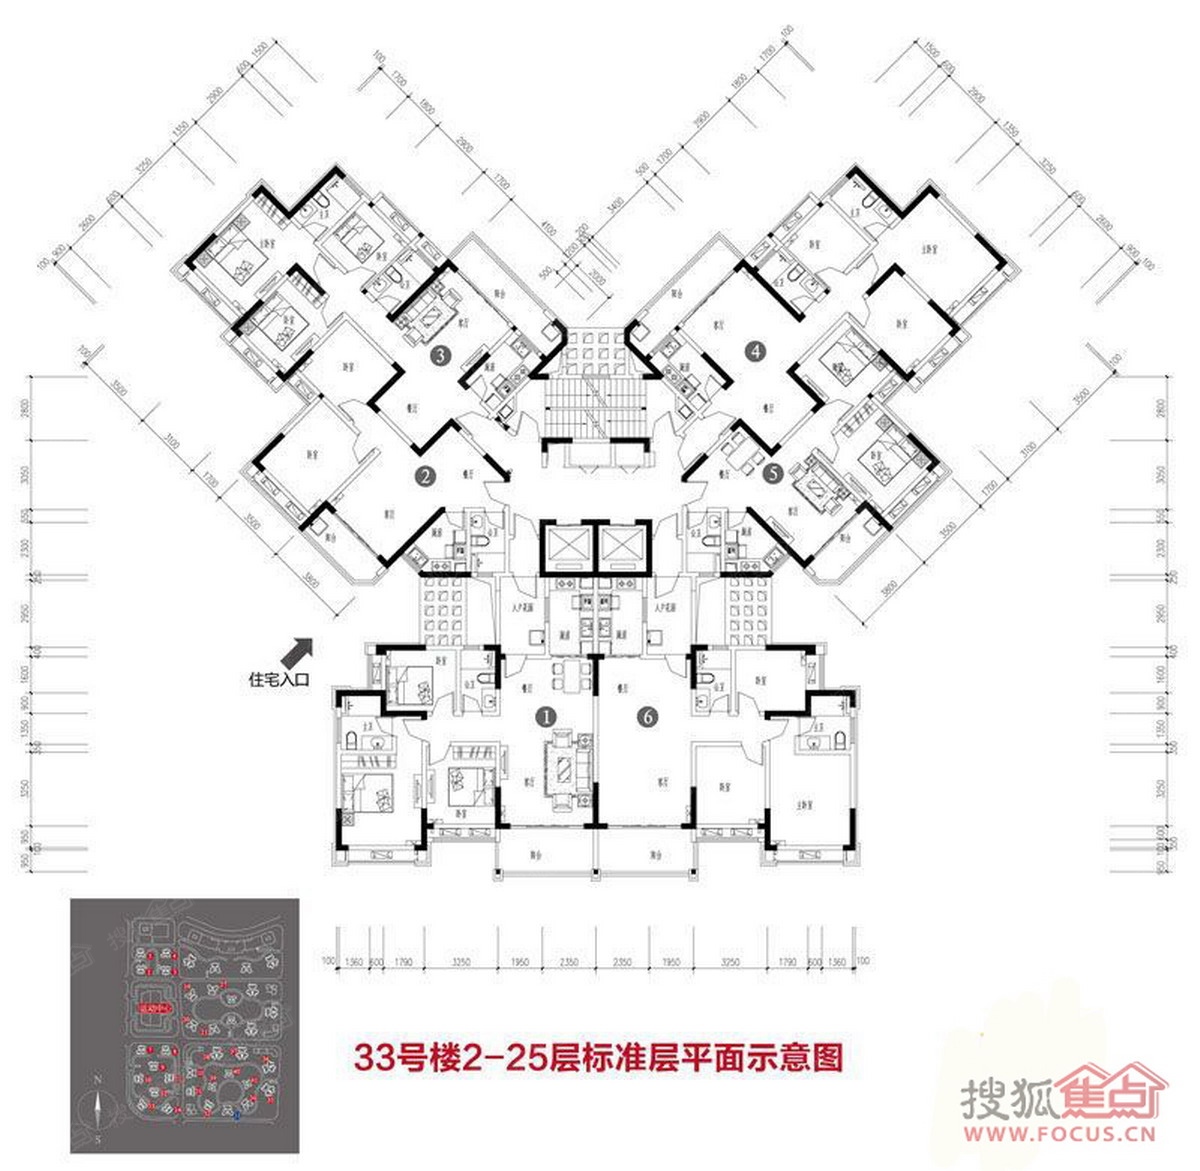 恒大雅苑一期33号楼标准层平面图-重庆搜狐焦